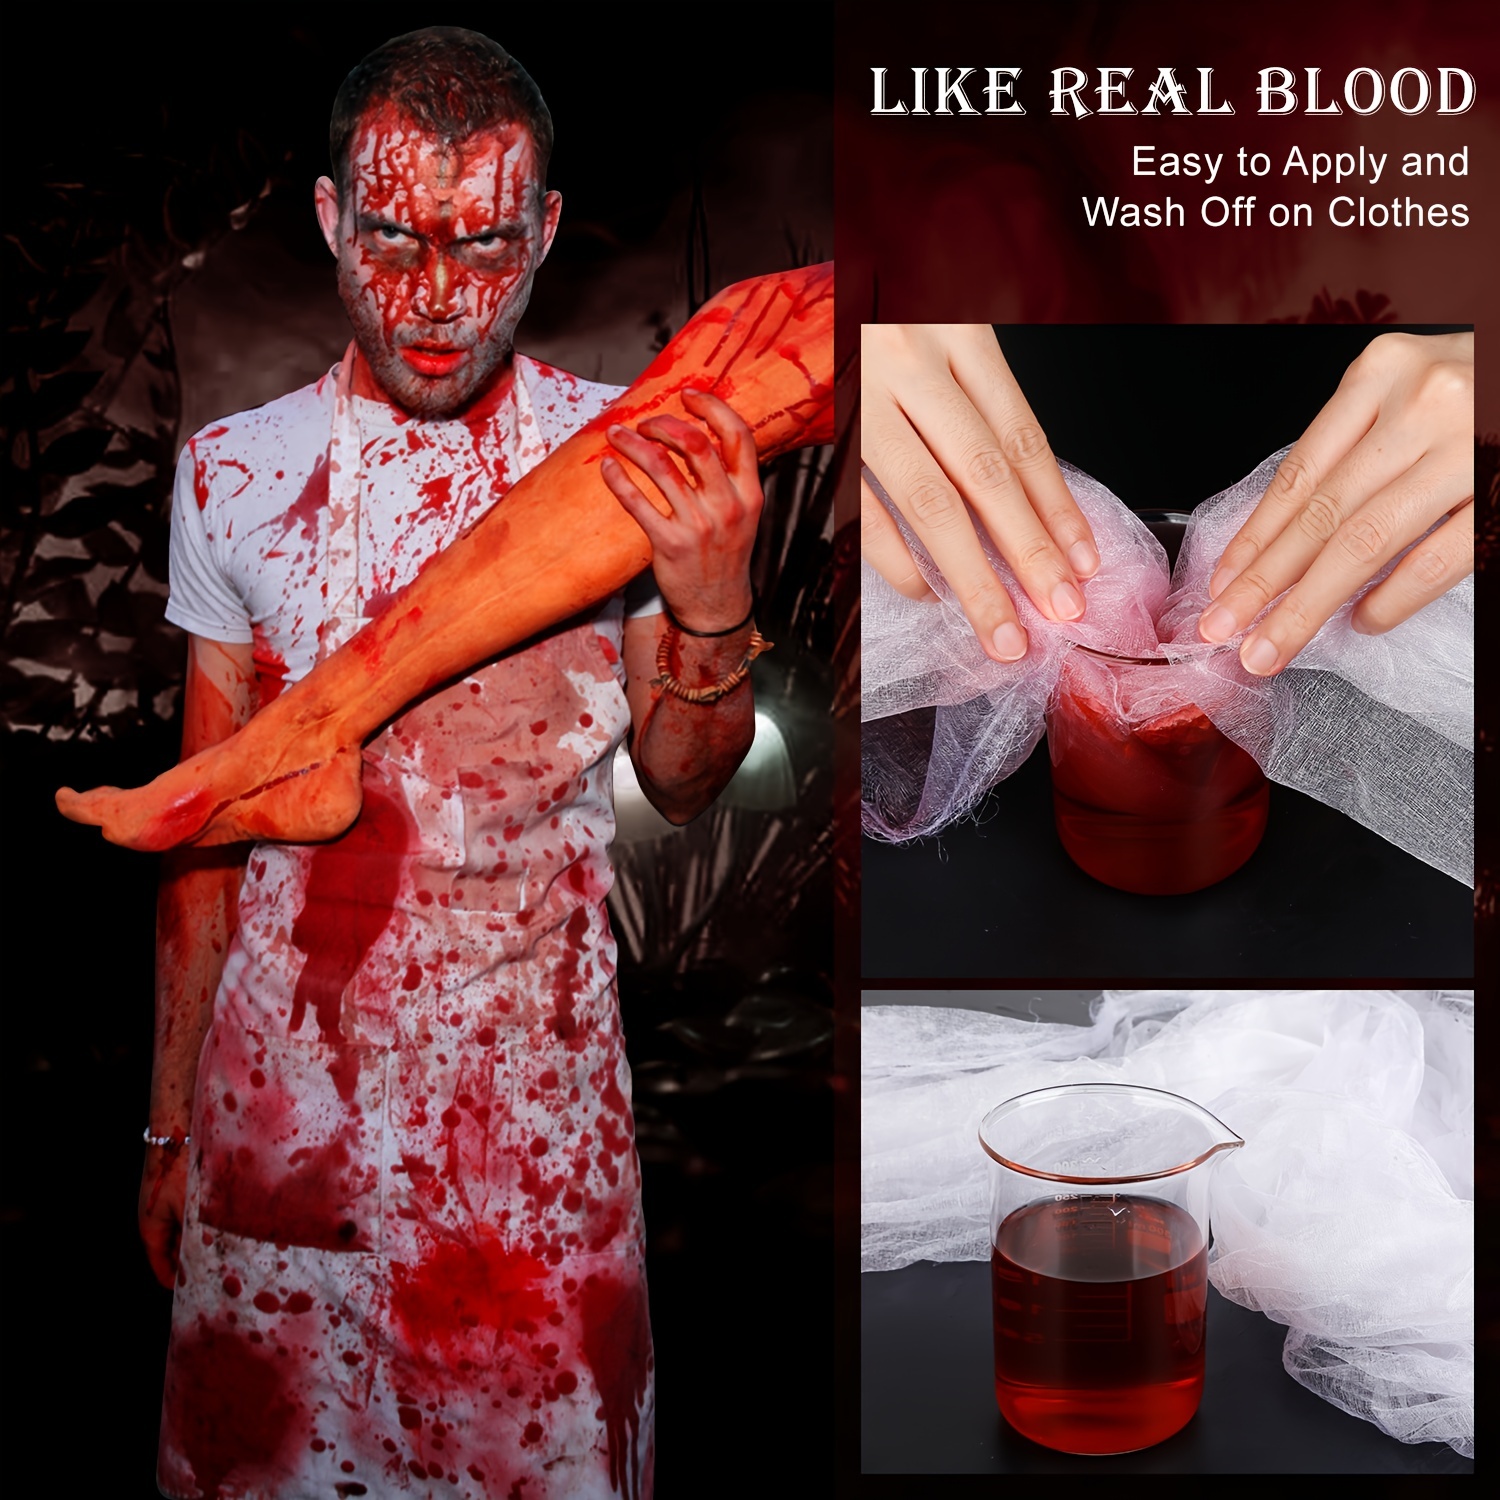 Fake blood